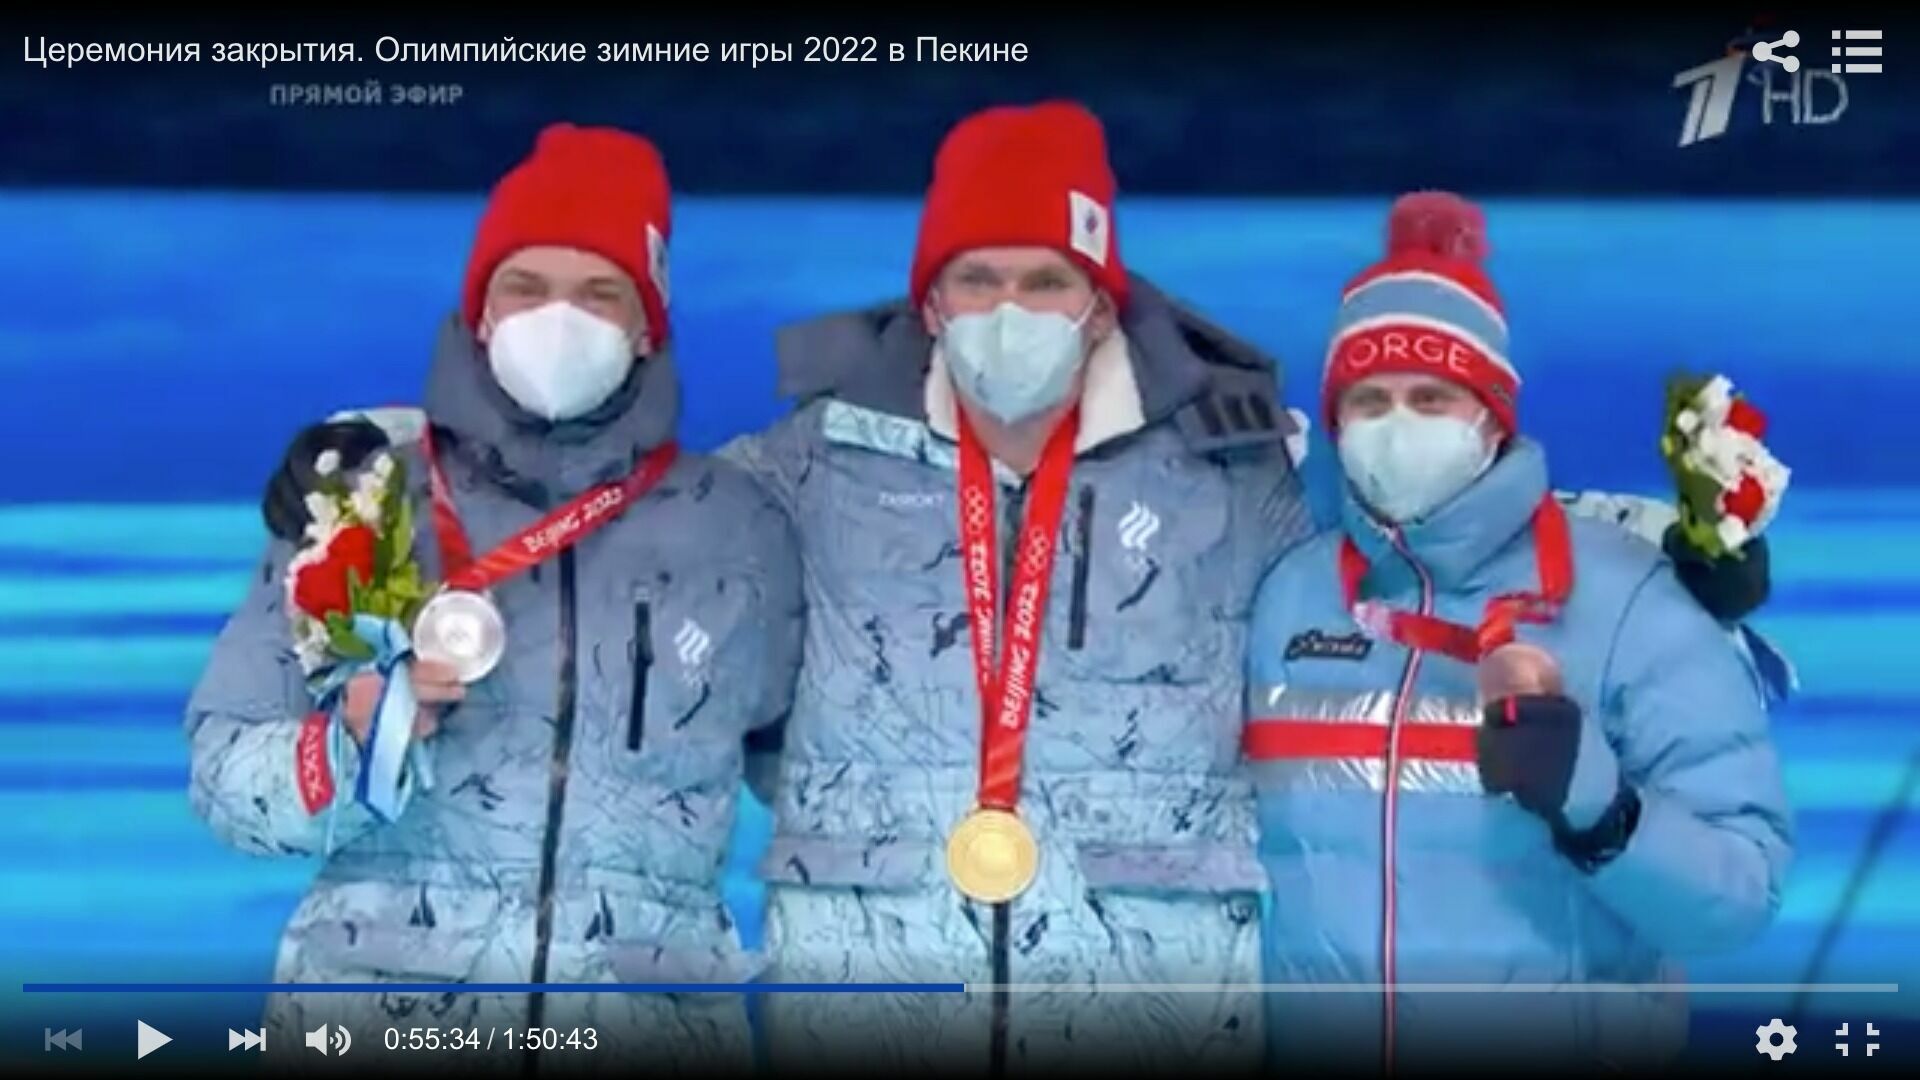 Апофеоз санитарного абсурда: полностью свободные от ковида победители лыжных гонок стоят на пьедестале почета в масках